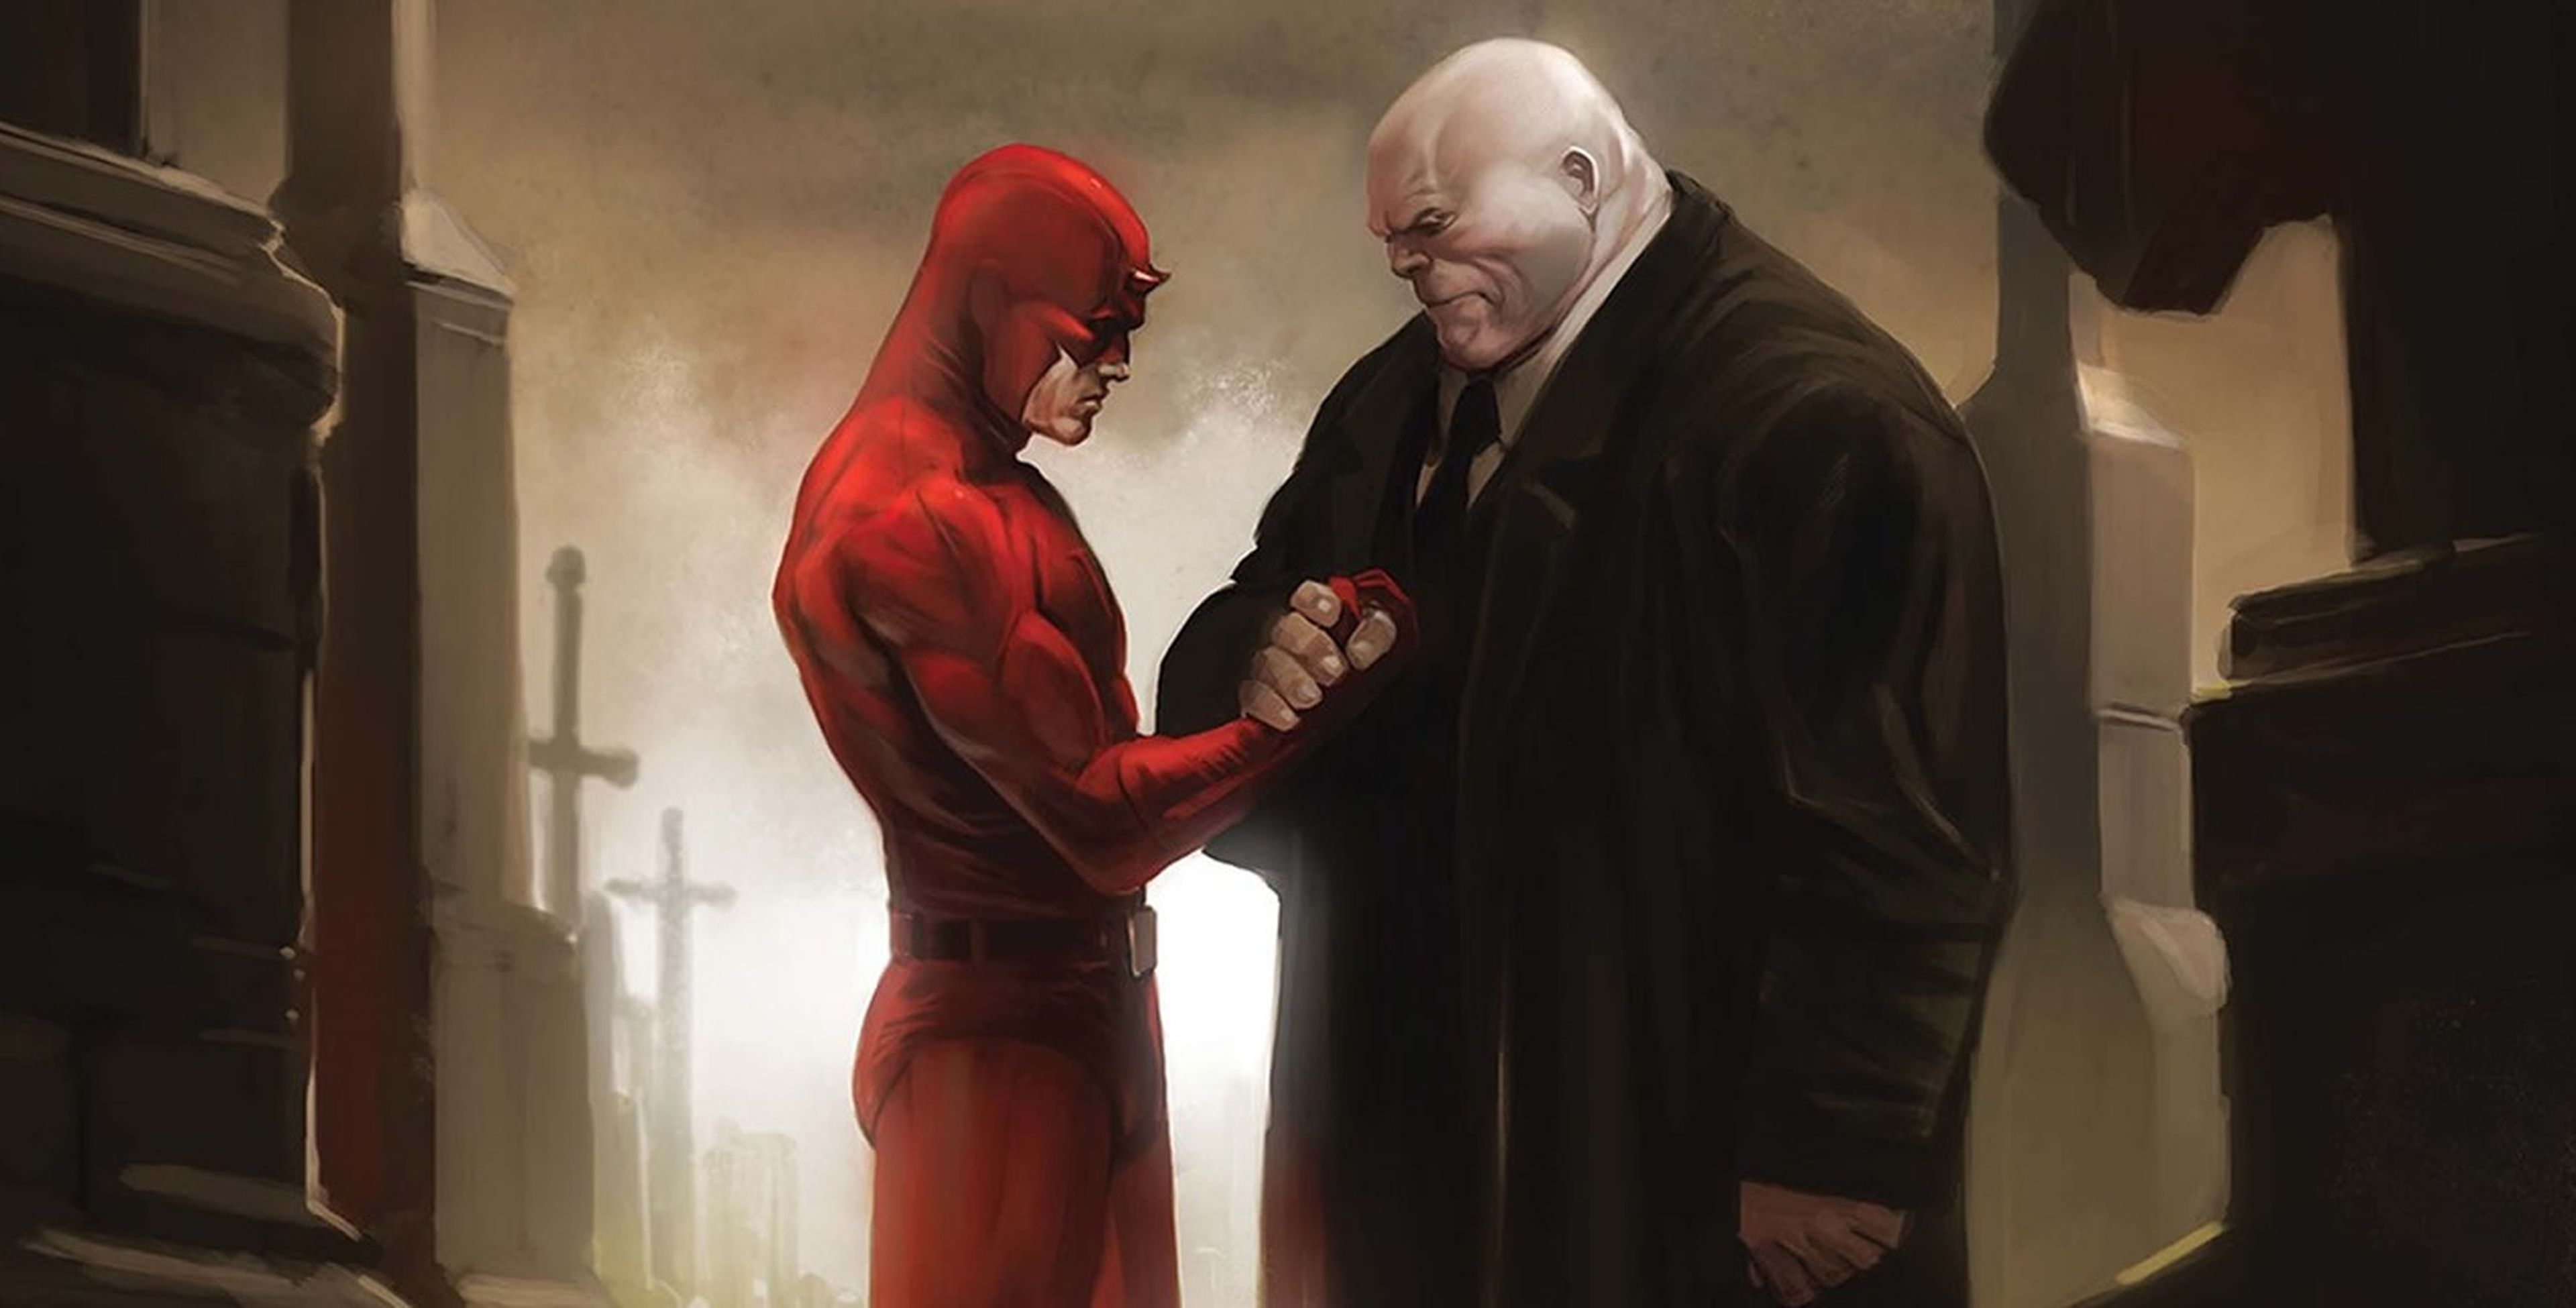 Cine de superhéroes: Crítica de Daredevil